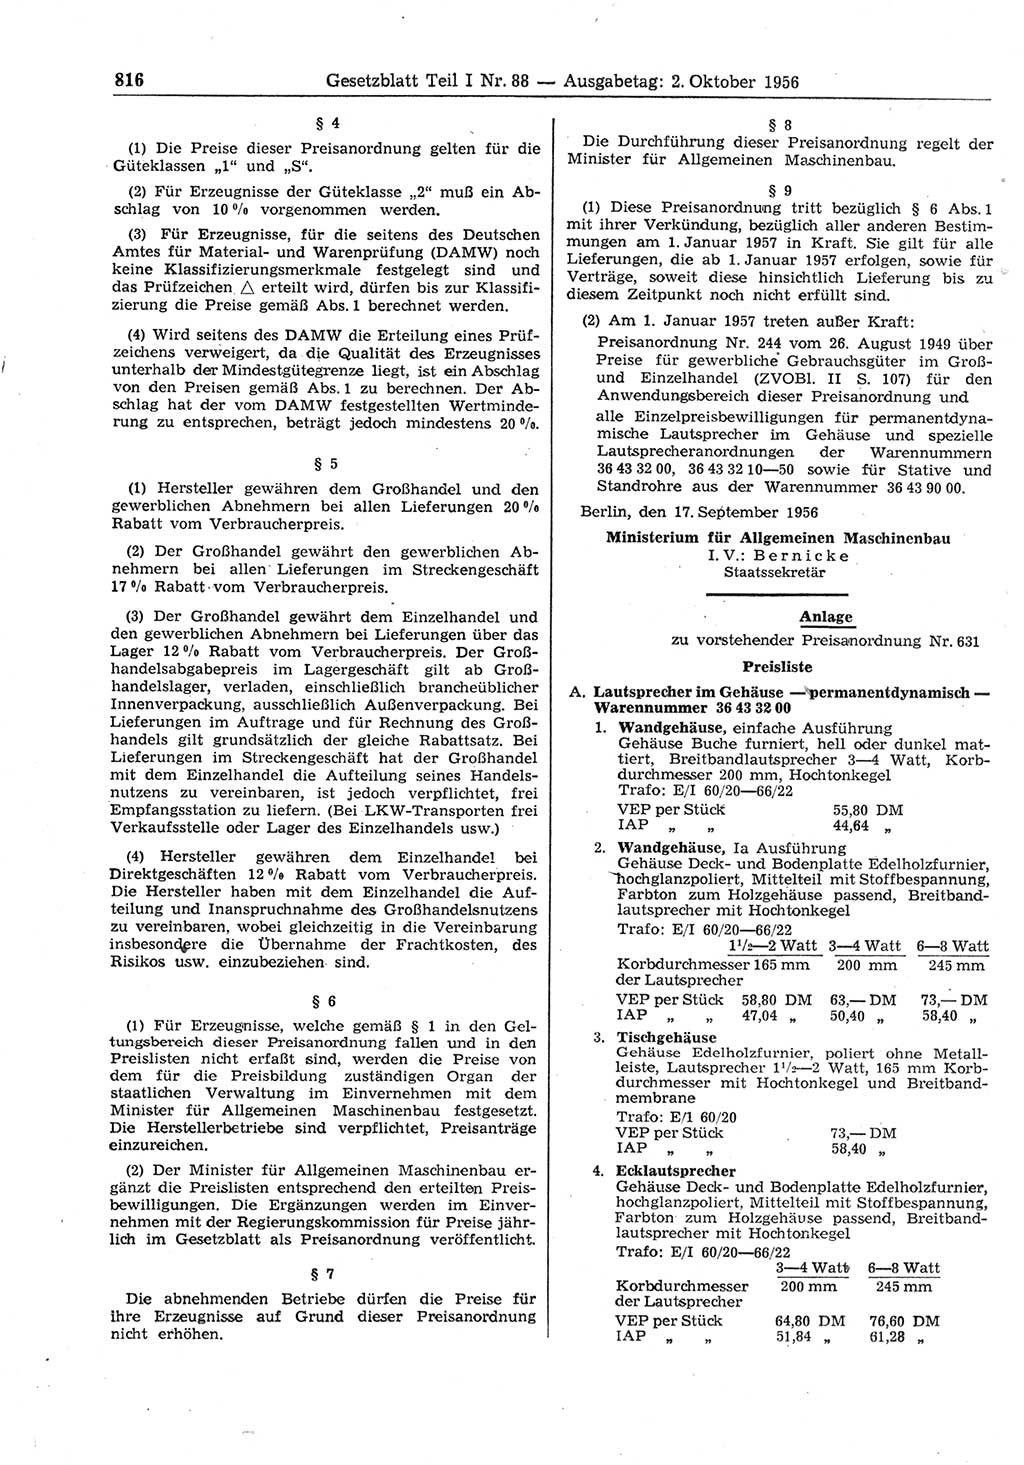 Gesetzblatt (GBl.) der Deutschen Demokratischen Republik (DDR) Teil Ⅰ 1956, Seite 816 (GBl. DDR Ⅰ 1956, S. 816)